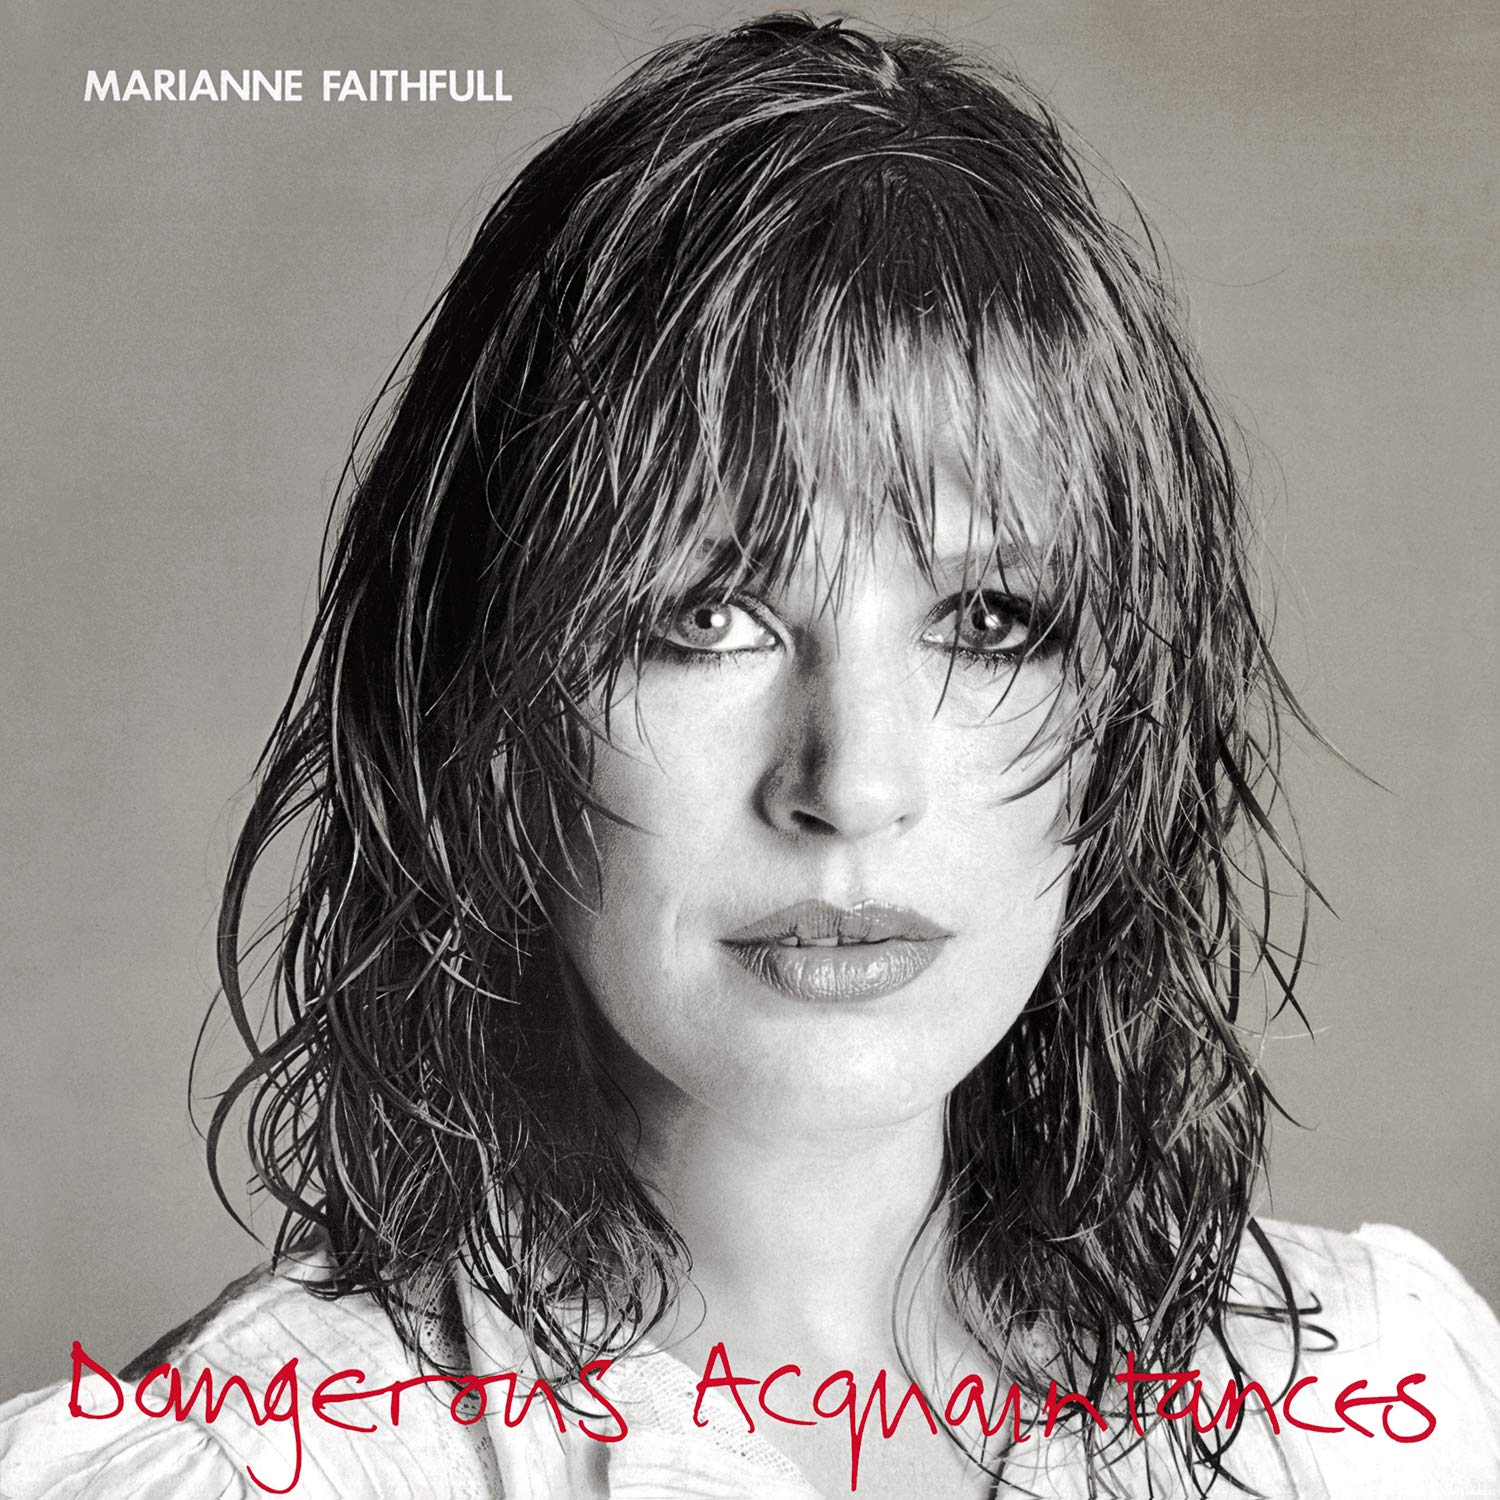 DANGEROUS ACQUAINTANCES (COLORED 180G LP)/MARIANNE FAITHFULL 